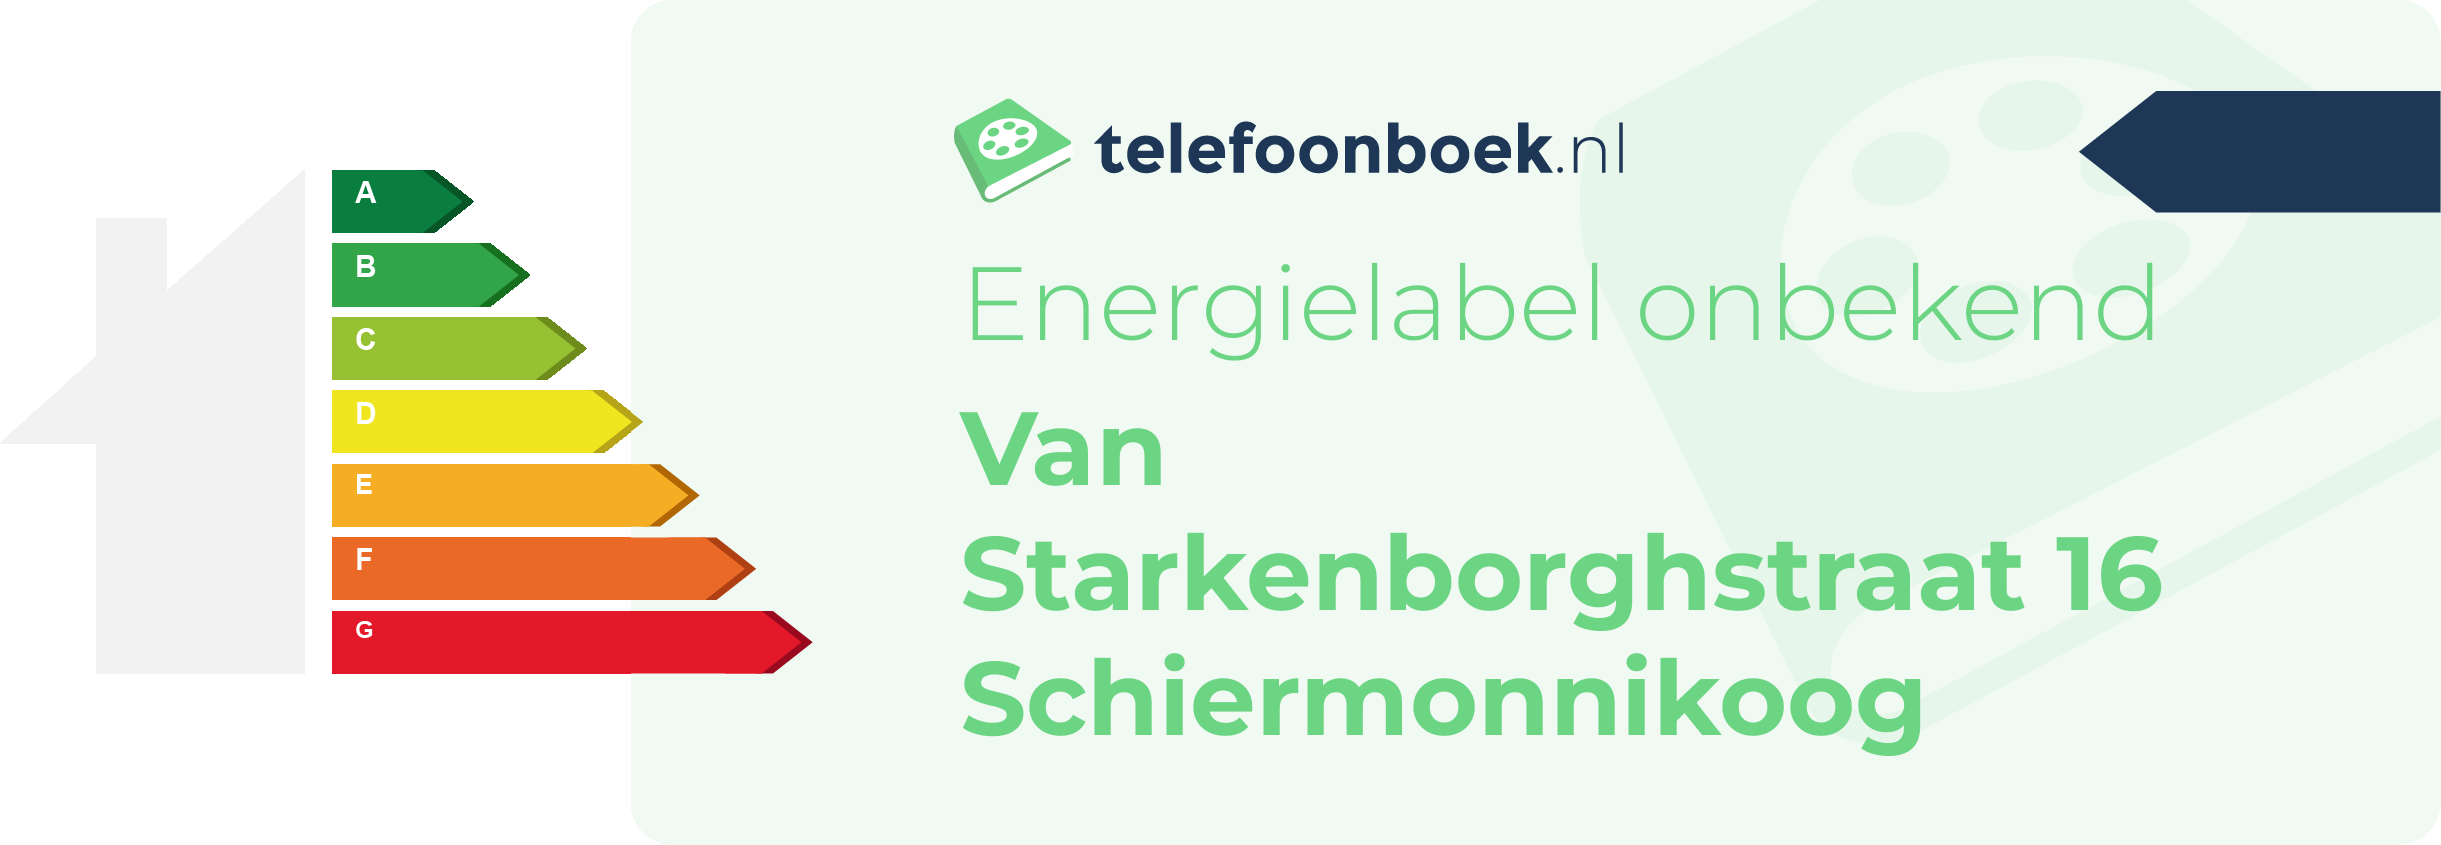 Energielabel Van Starkenborghstraat 16 Schiermonnikoog